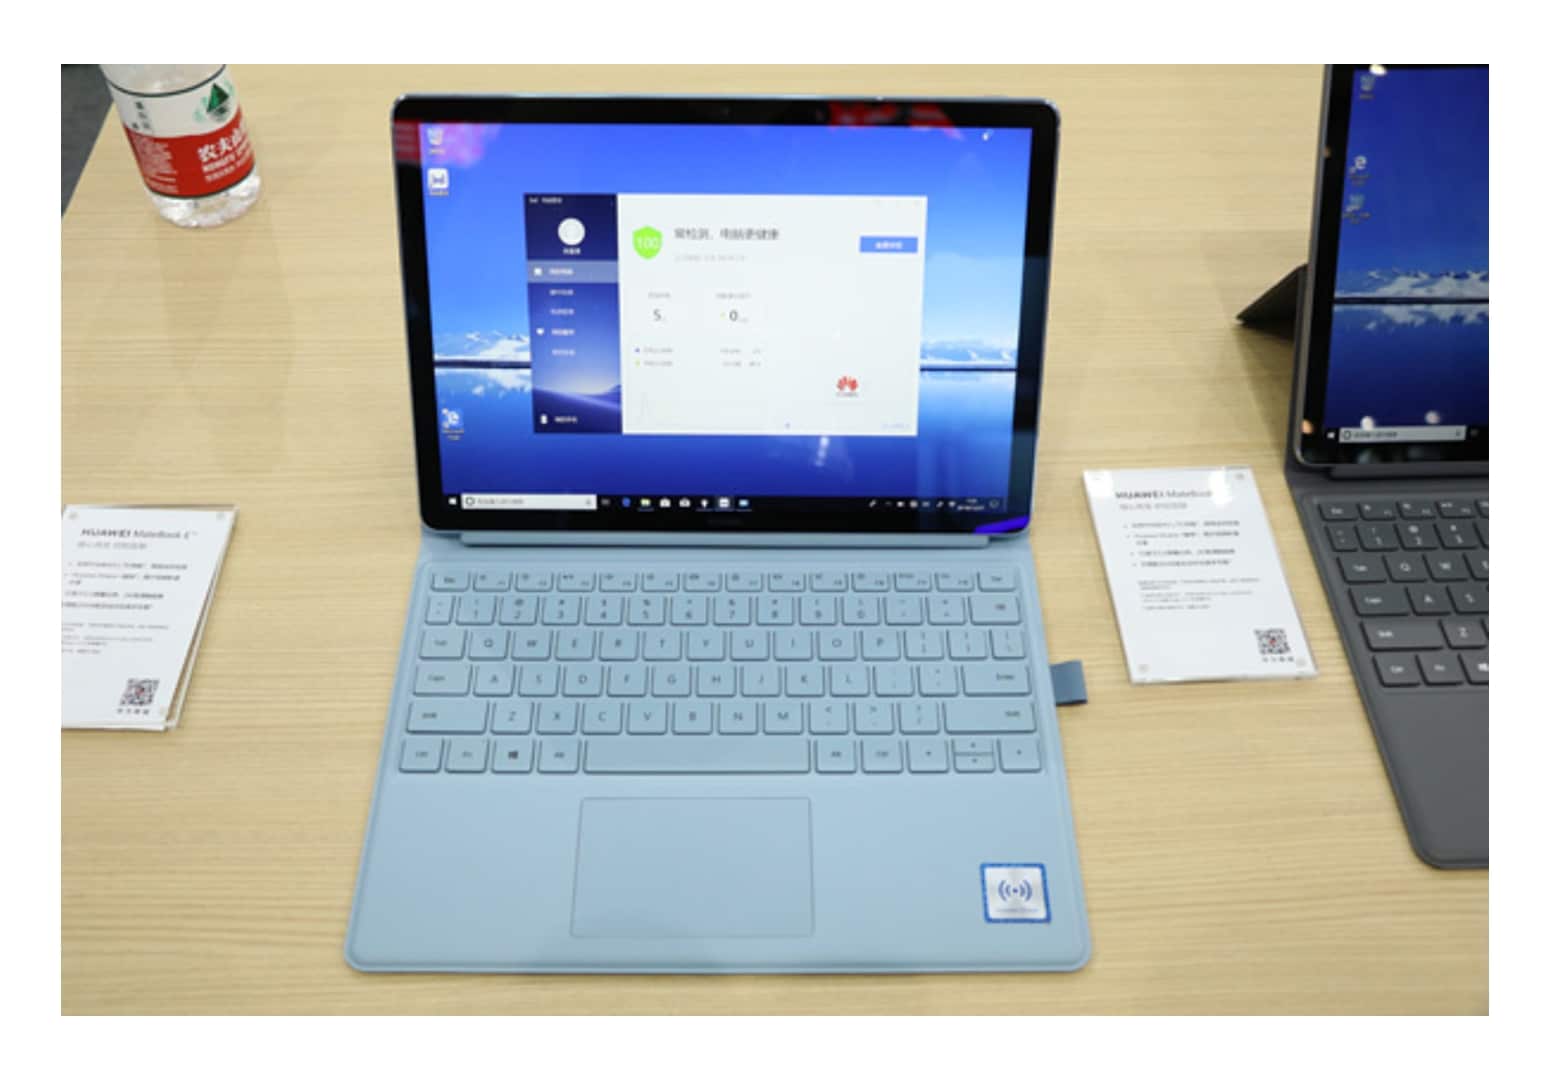 Huawei MateBook E (2019)